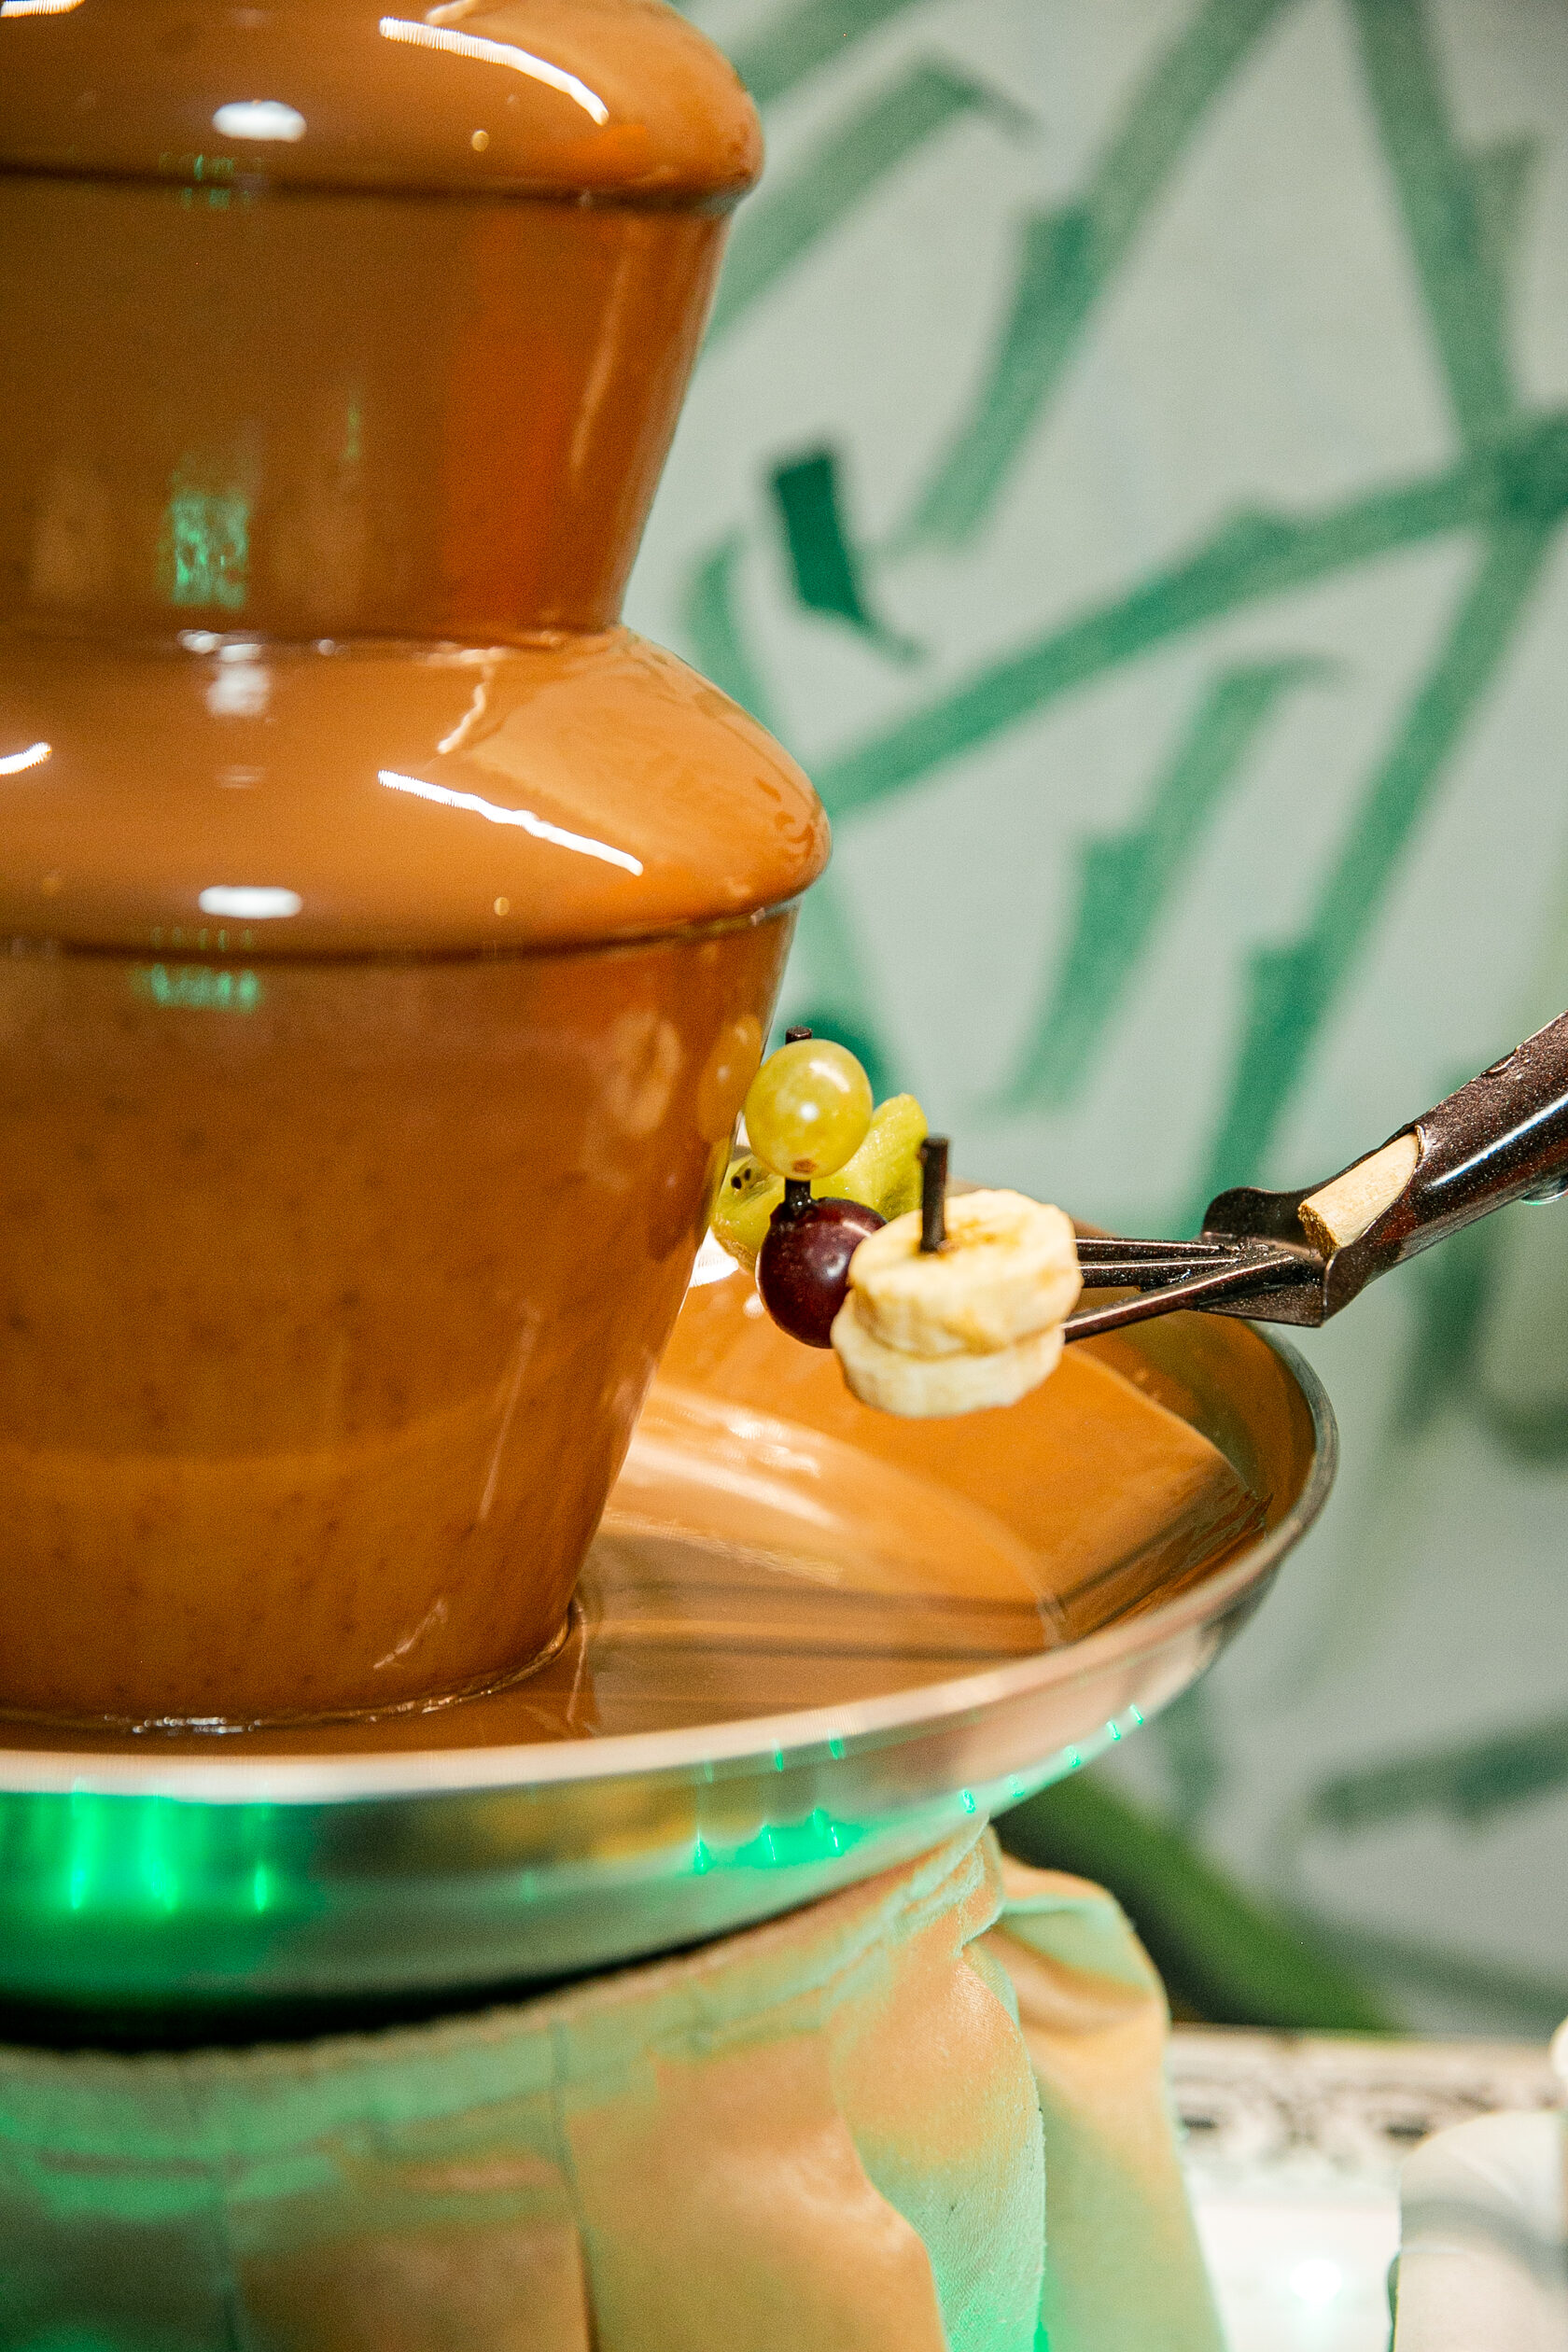 Шоколадный фонтан крупным планом размером 50 см, вокруг которого на шпажке нарезанные дольками бананы, подходящие для погружения в шоколадную кастрюлю.